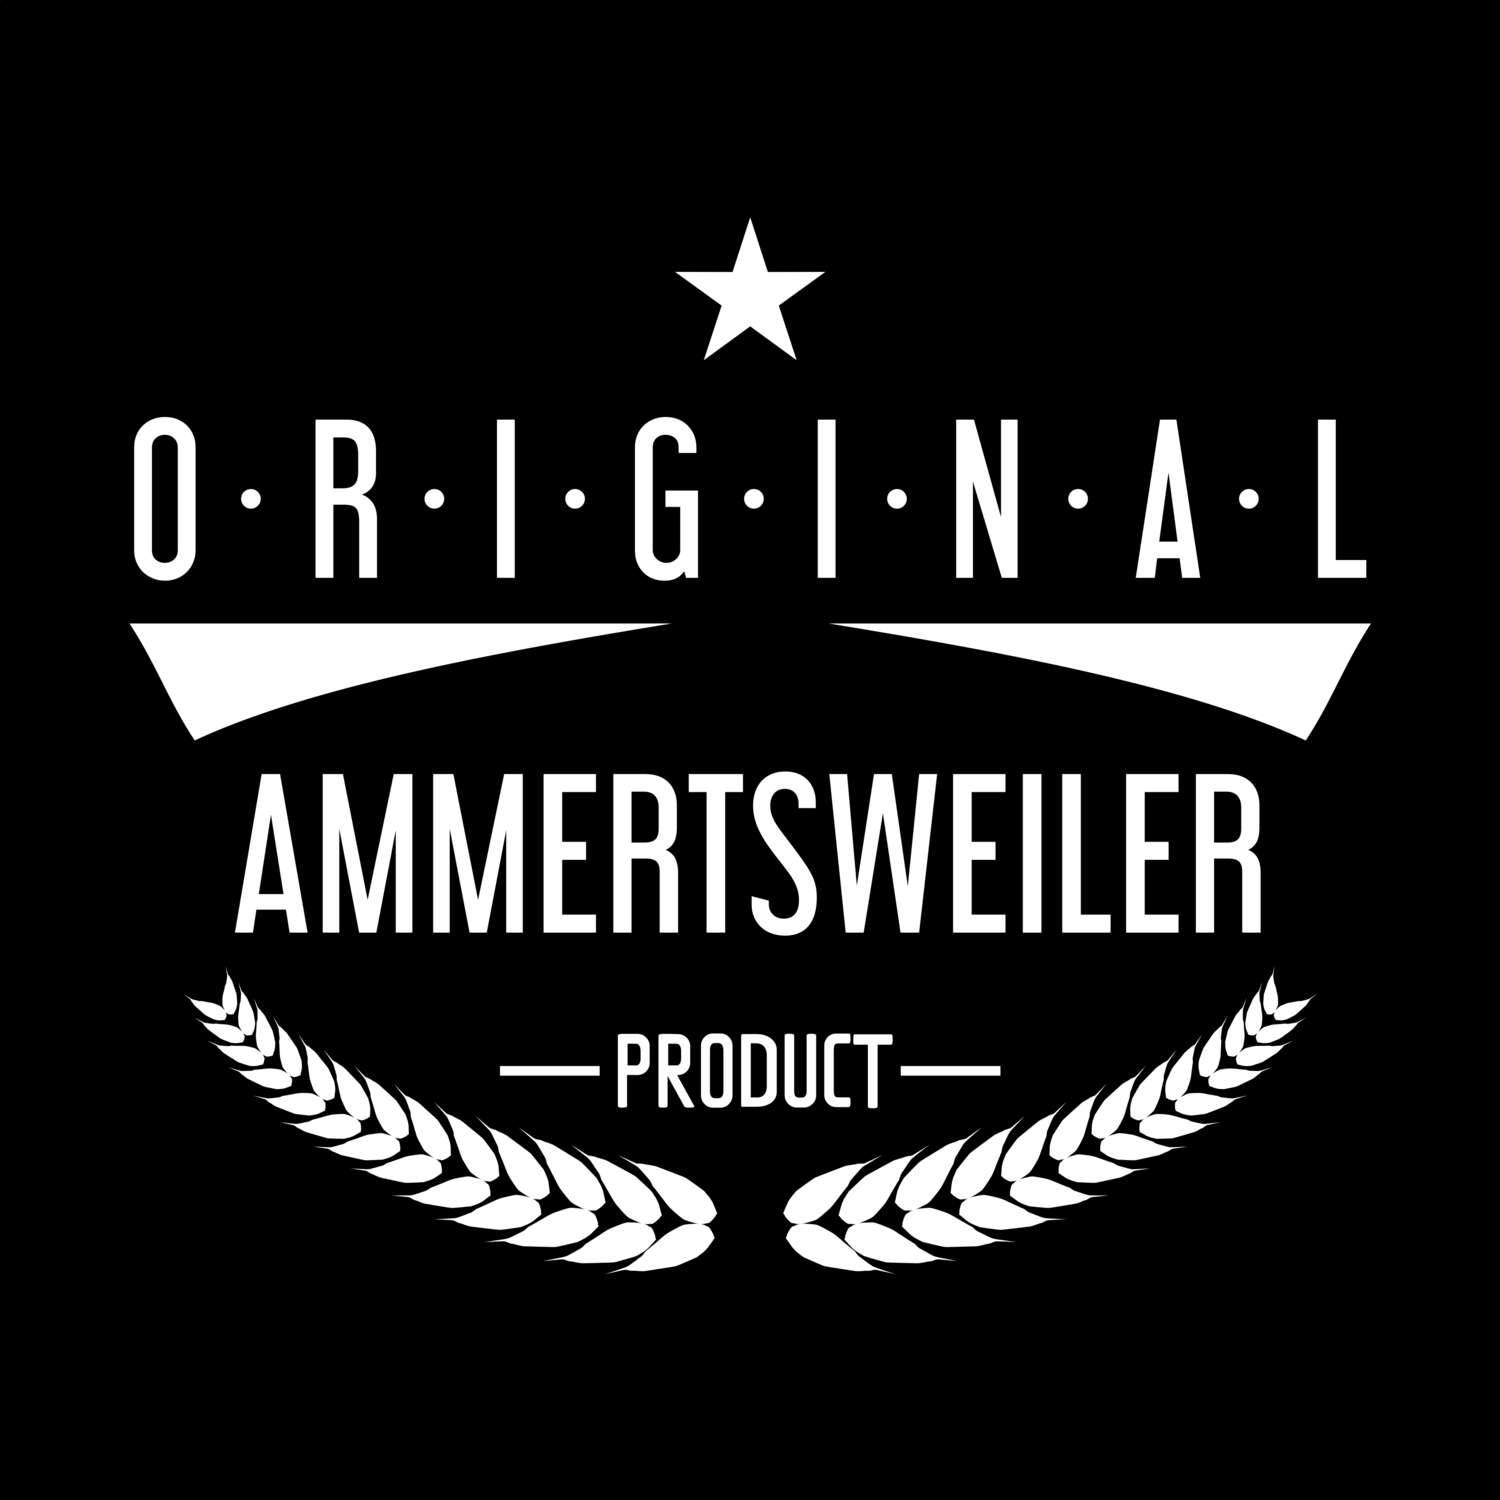 Ammertsweiler T-Shirt »Original Product«